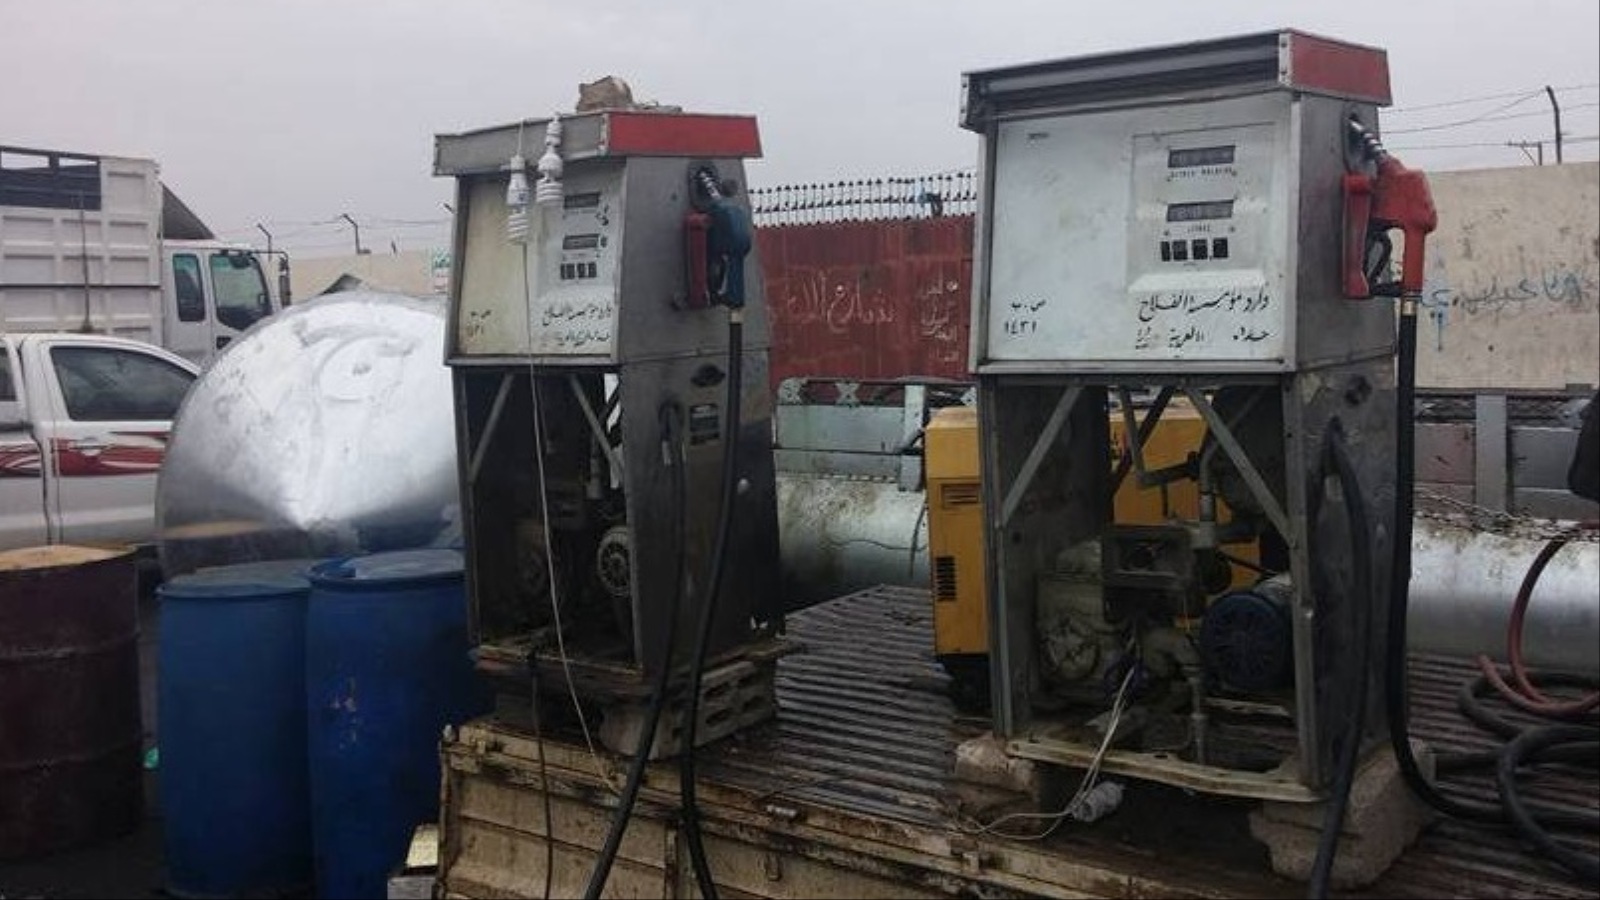 ‪أجهزة لضخ البنزين توضع في مركبات لبيع مواد البترول في إطار السوق السوداء‬ (الجزيرة)